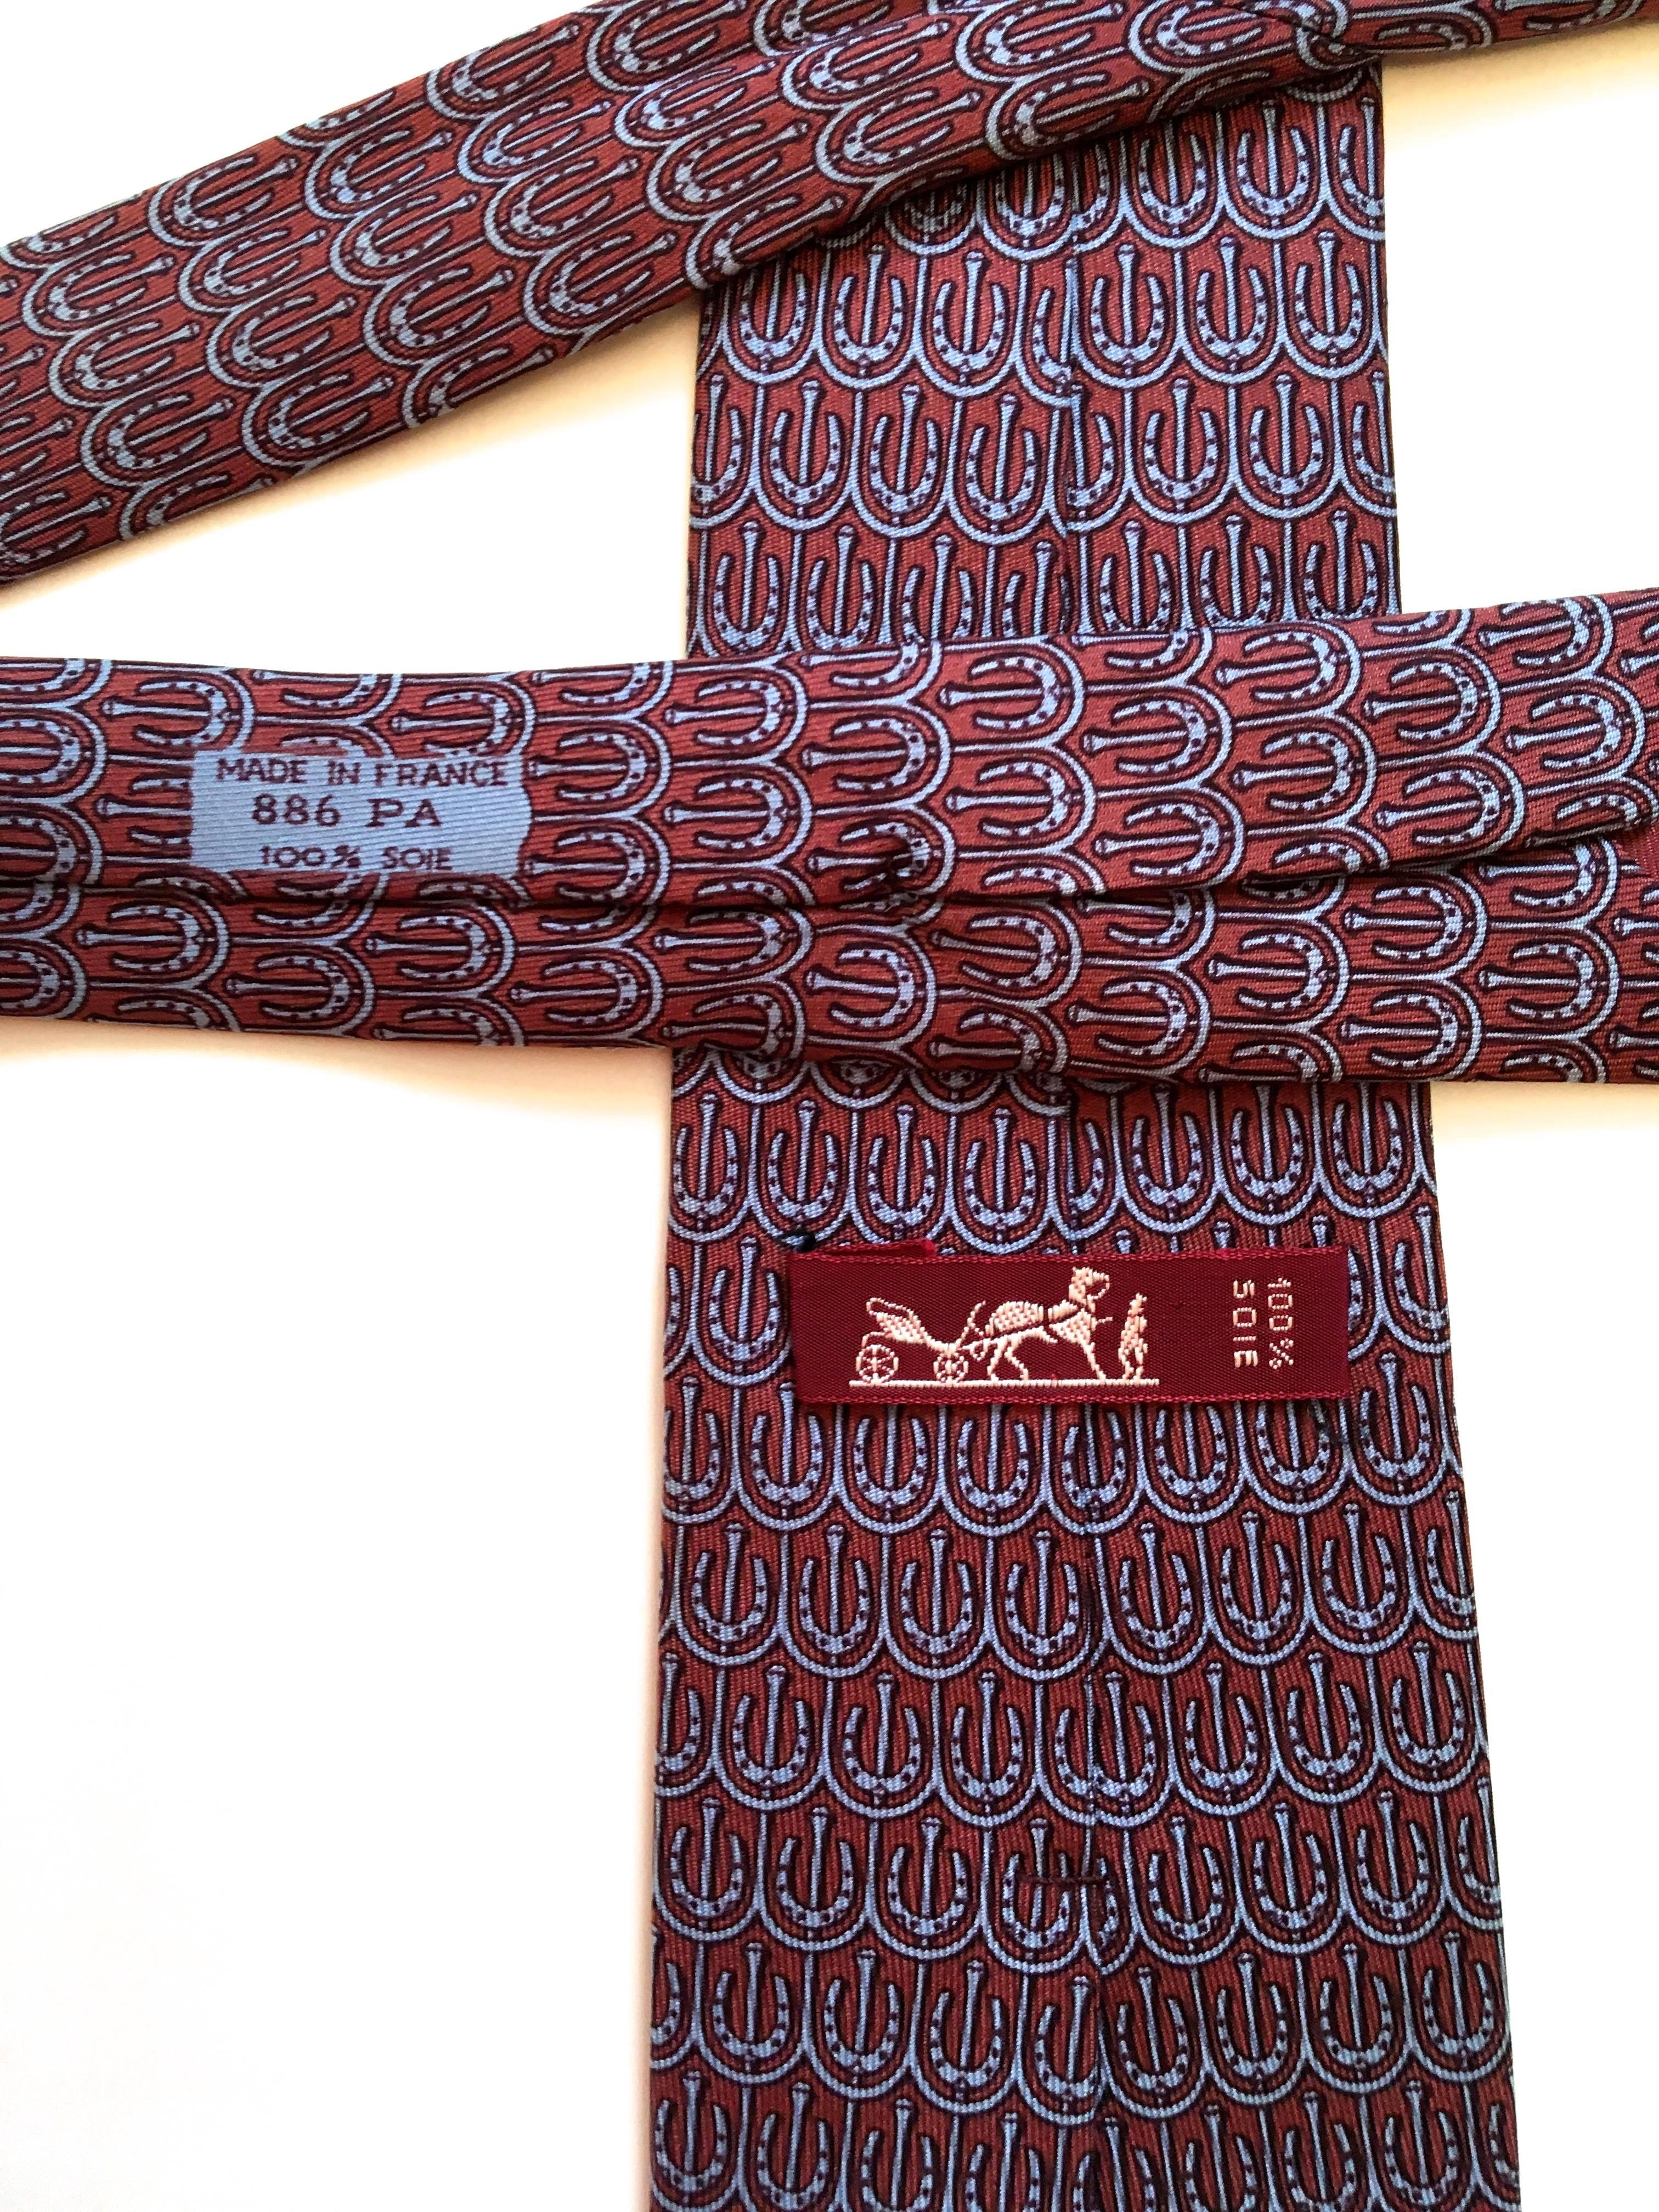 Vintage Hermes Tie - 100% Silk 2